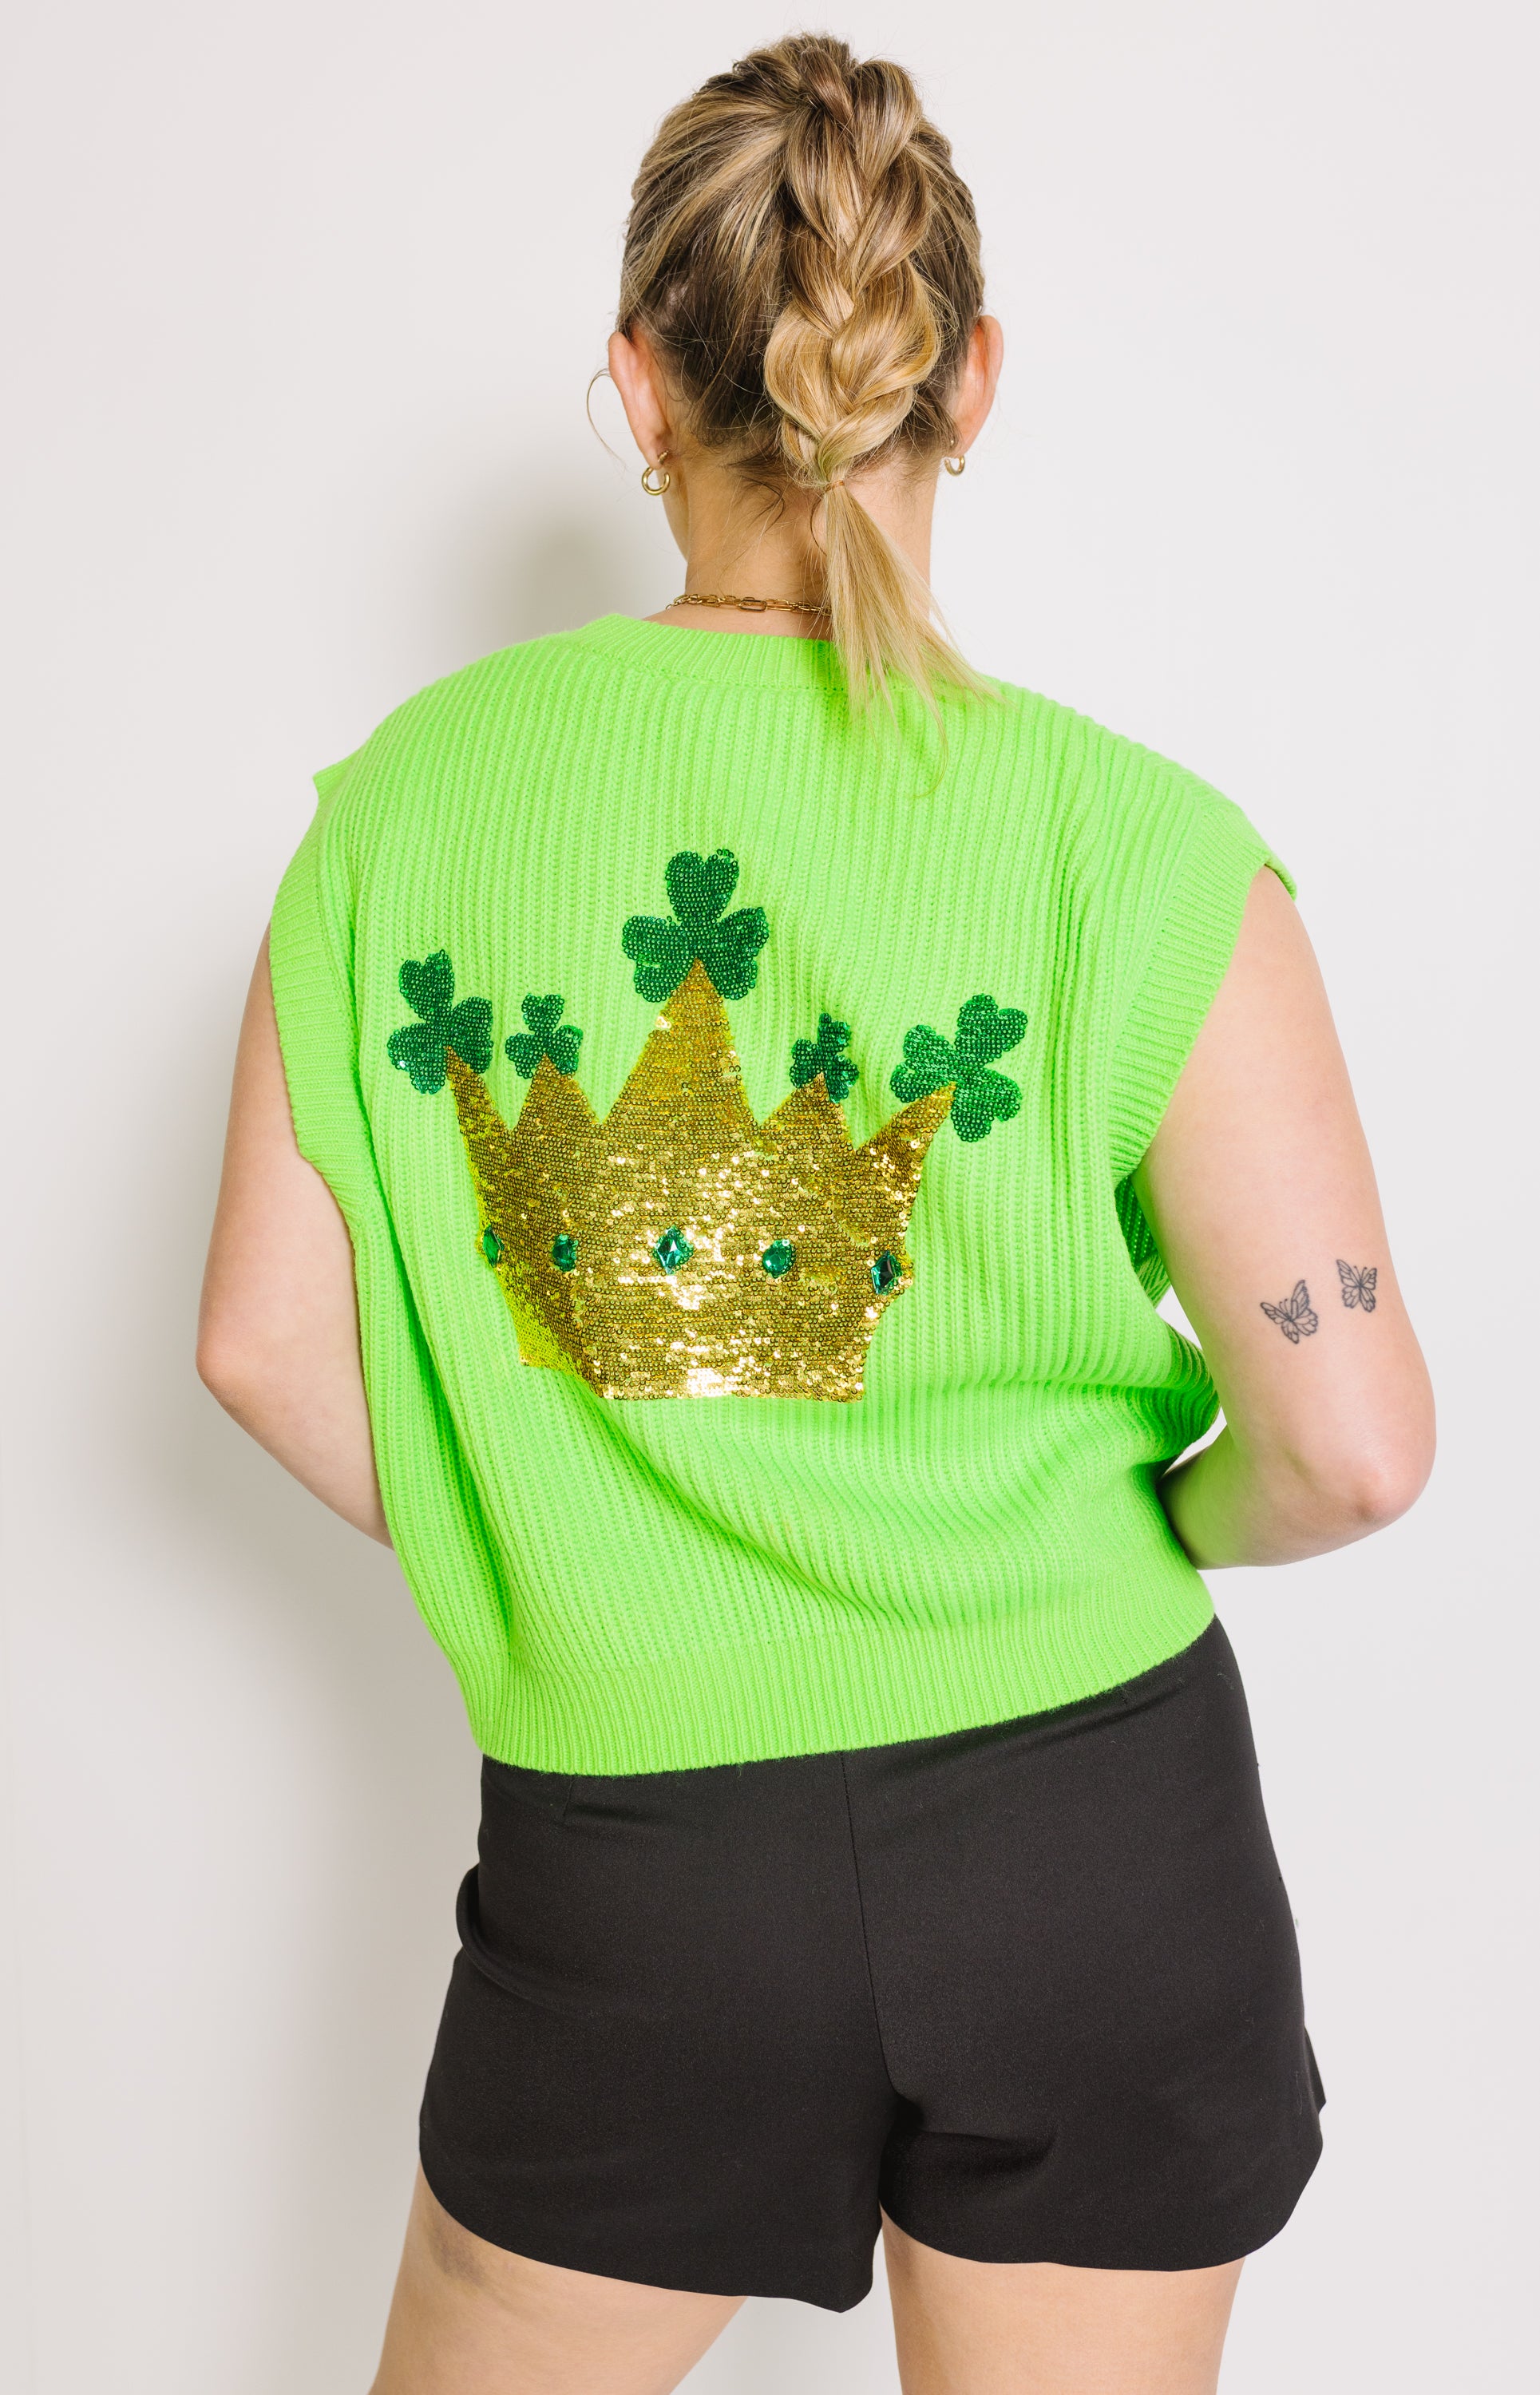 Queen of Sparkles: Lucky Queen Sweater Vest